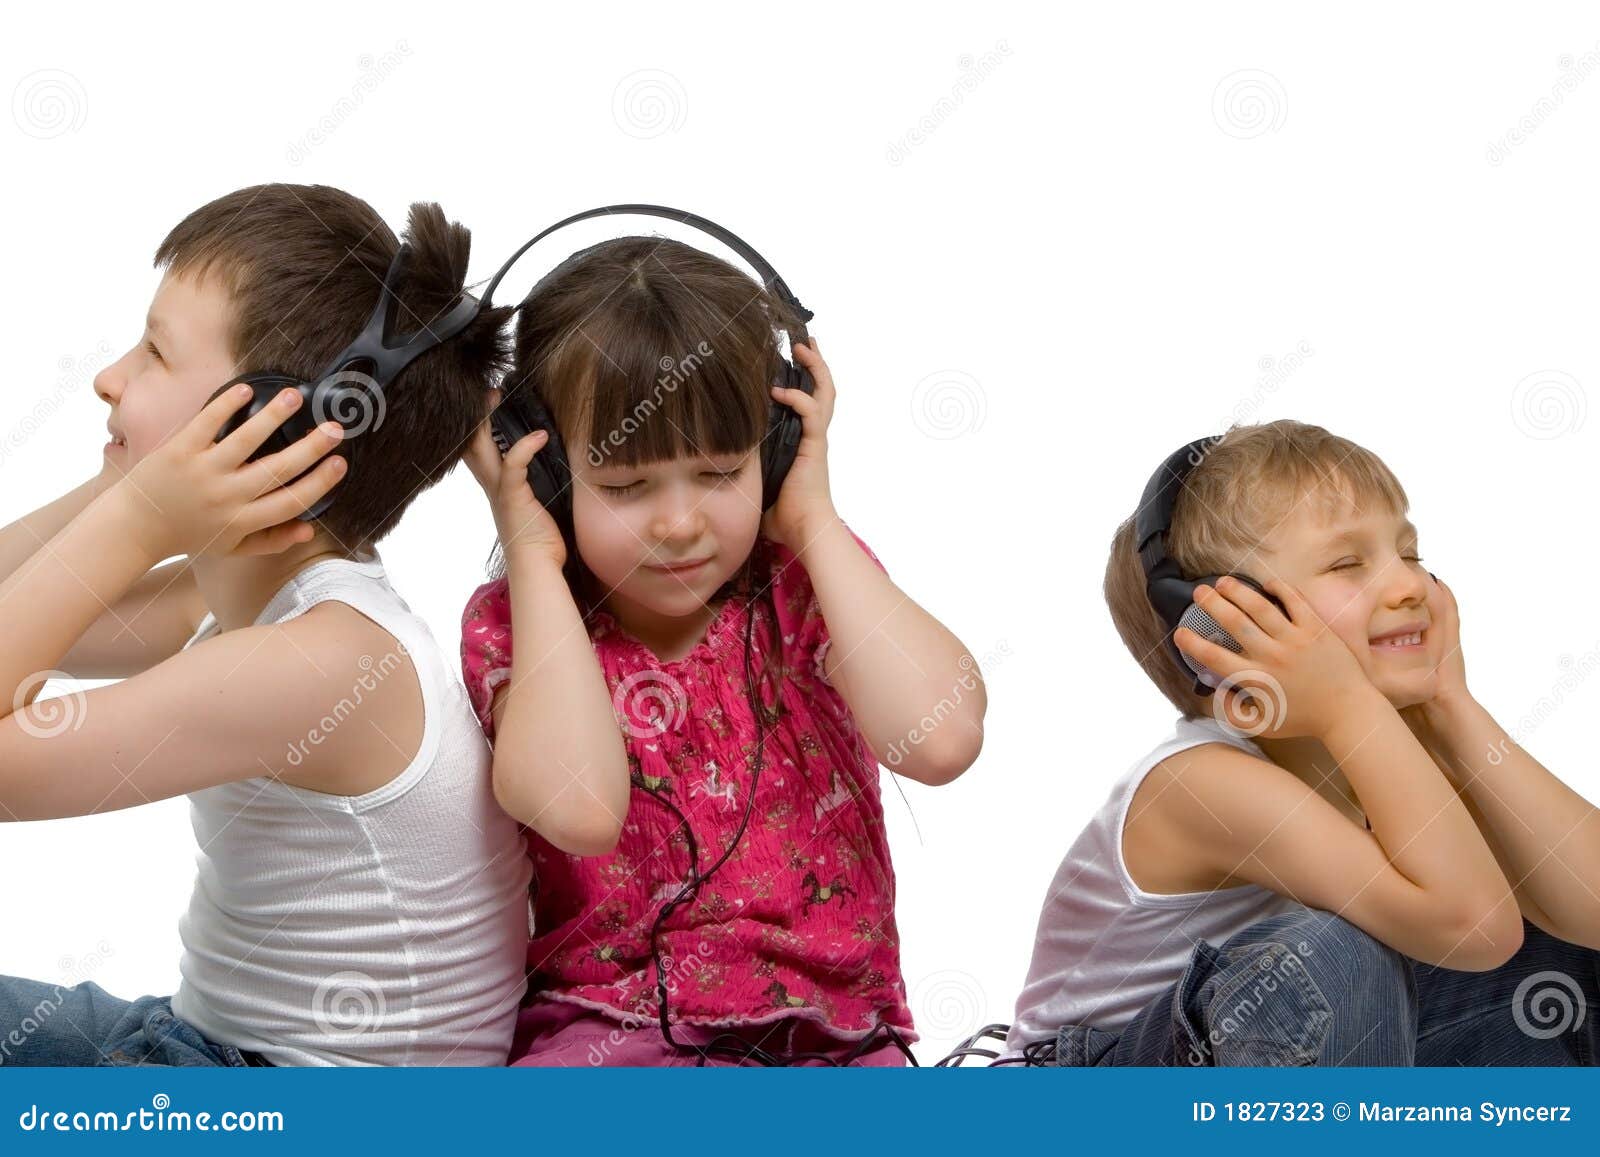 Детскую музыку послушать: Коллекция детских песен. Песенки онлайн